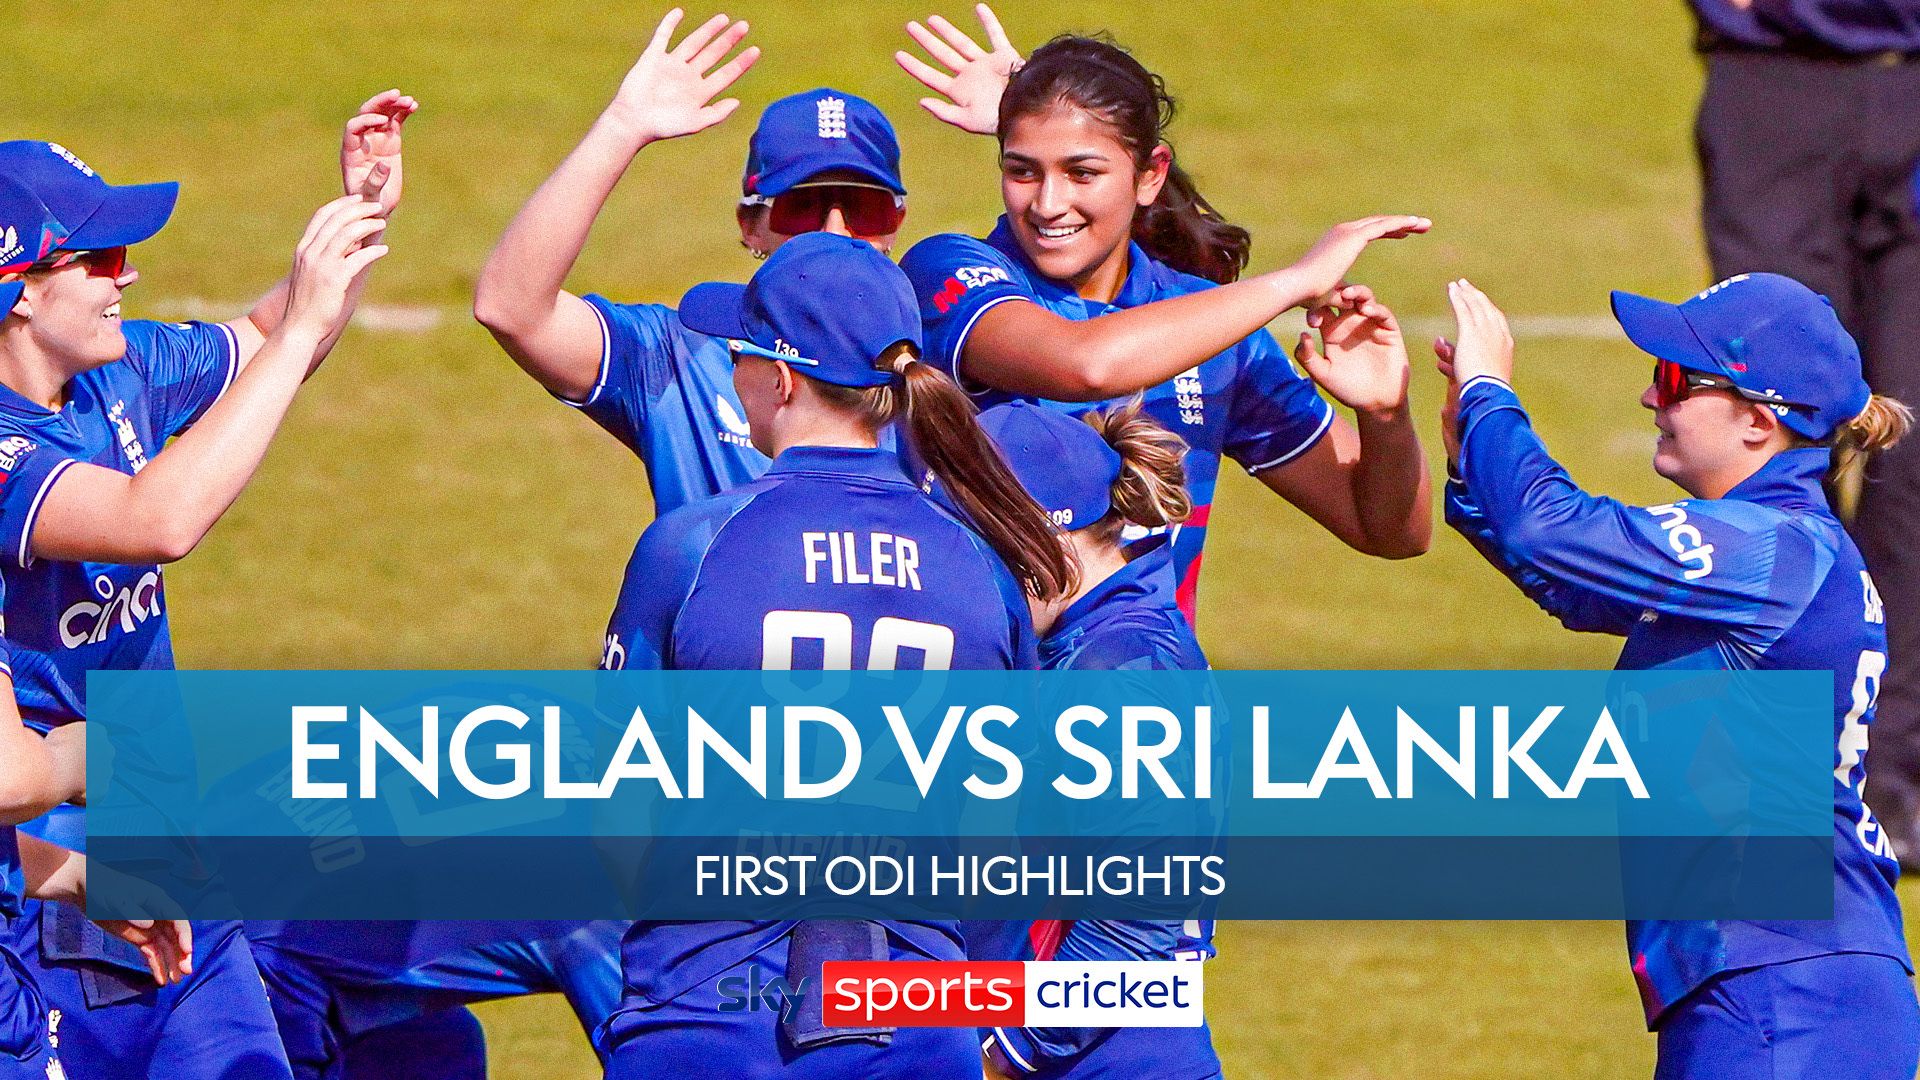 Highlights: Gaur and Filer shine as England thrash Sri Lanka